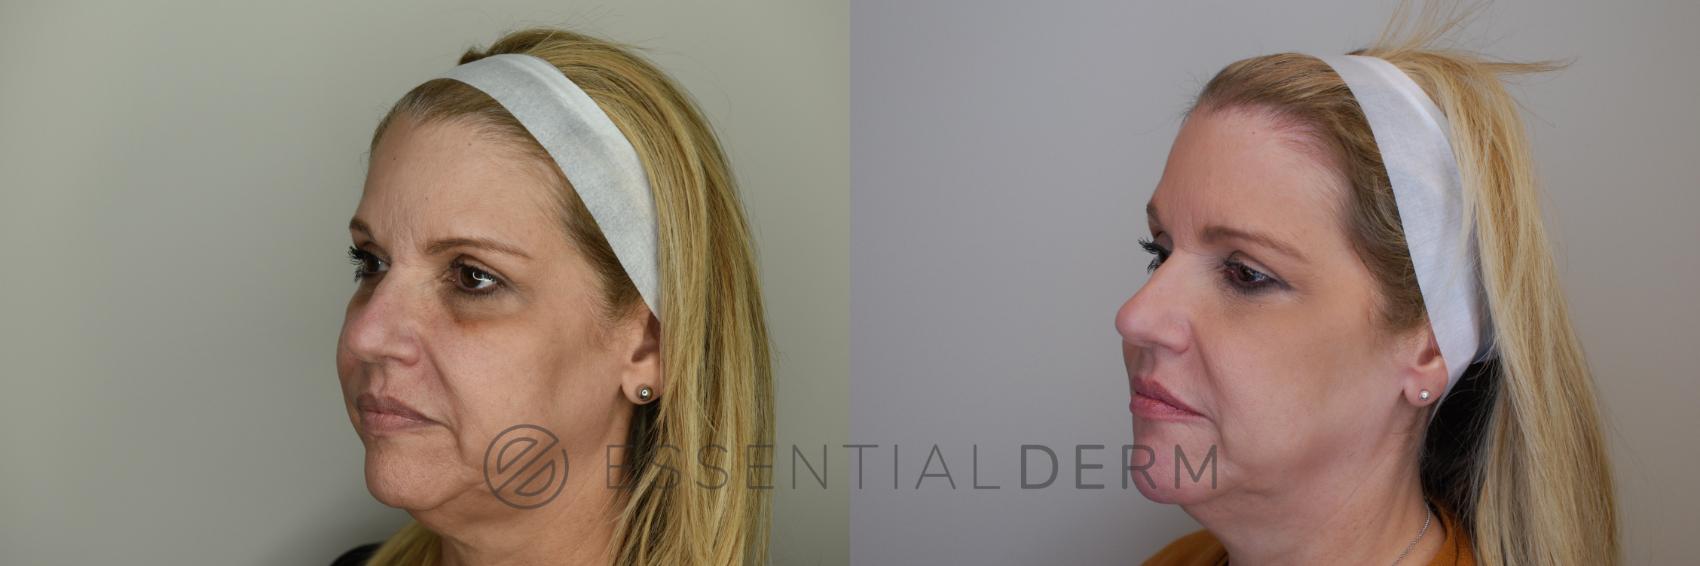 Dermal Fillers Case 22 Before & After Left Oblique | Natick, MA | Essential Dermatology